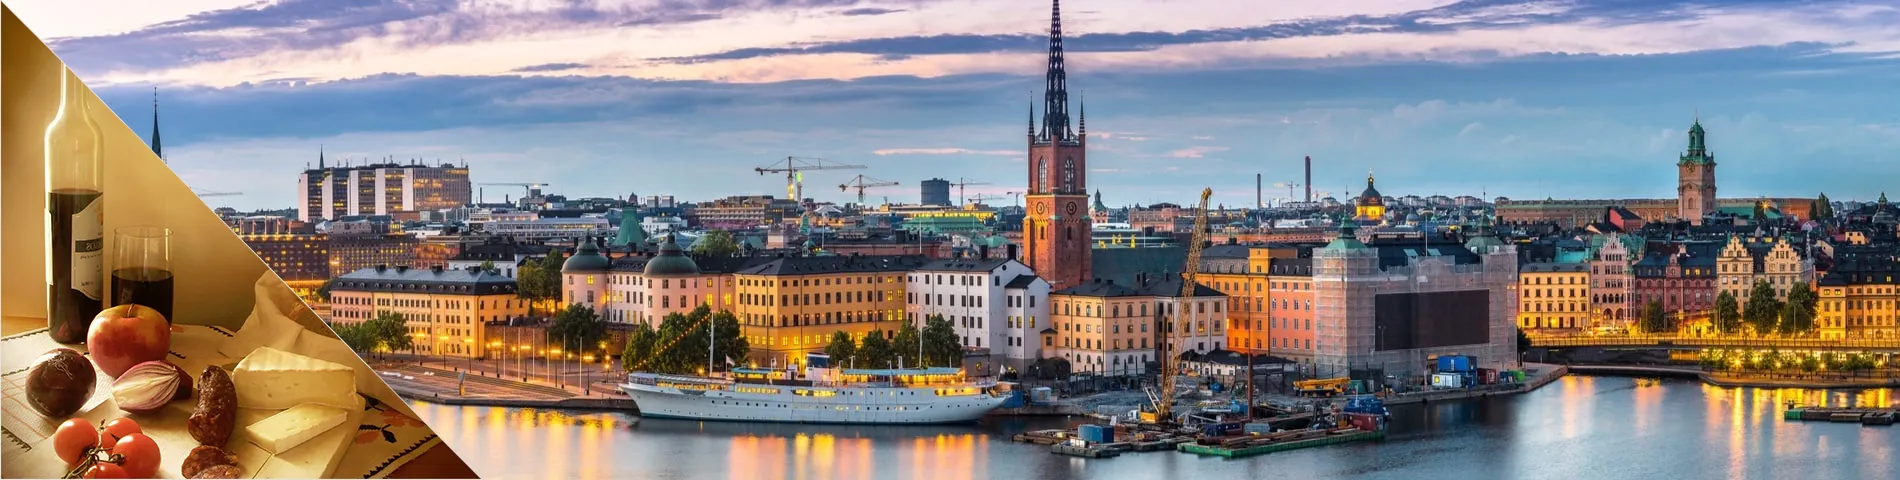 Estocolmo - Sueco + Cultura